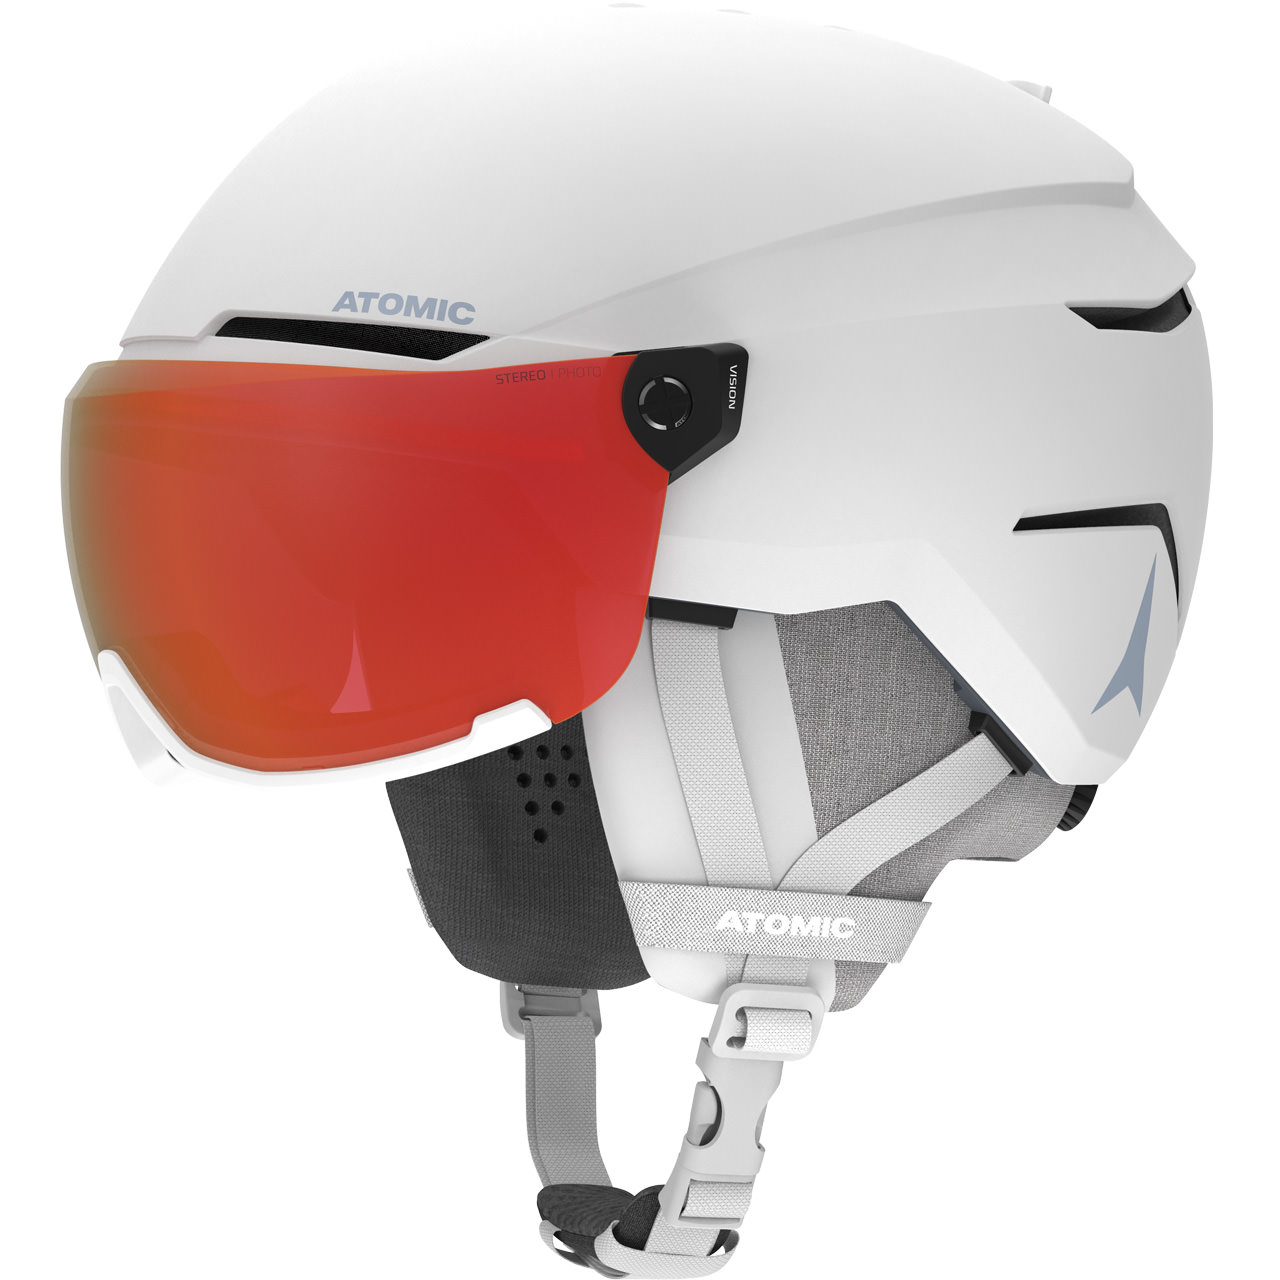 Photochomic visor for Kask helmet, Kask